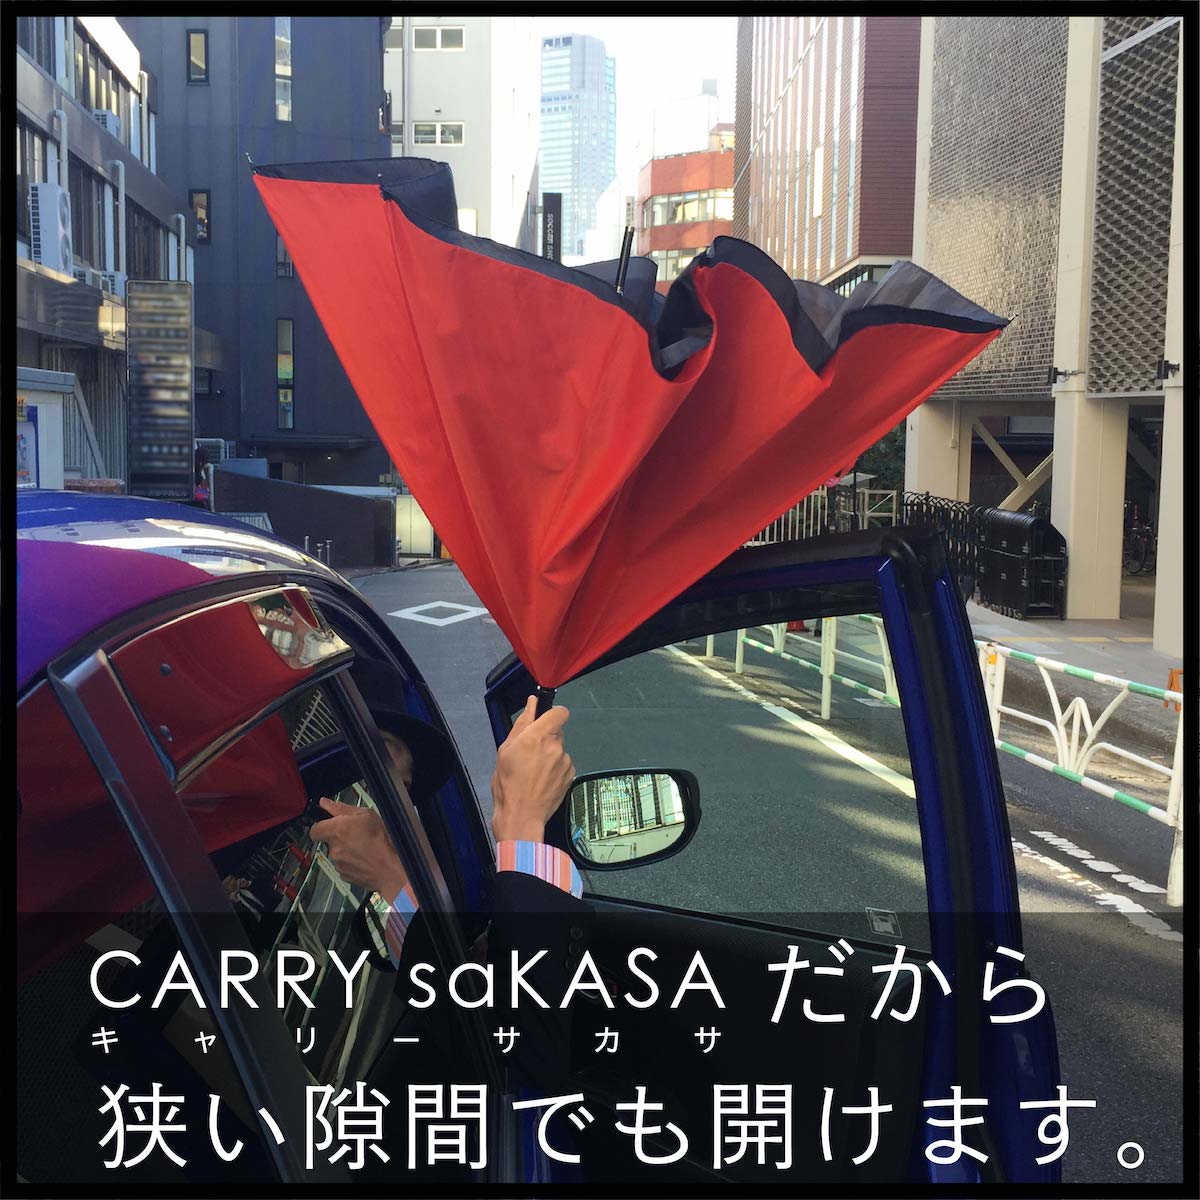 【楽天市場】メンズ 逆さ傘 【CARRY saKASA キャリーサカサ カモフラモデル】逆さ傘 軽量 プレゼント 男性 傘 迷彩柄 長傘 雨傘